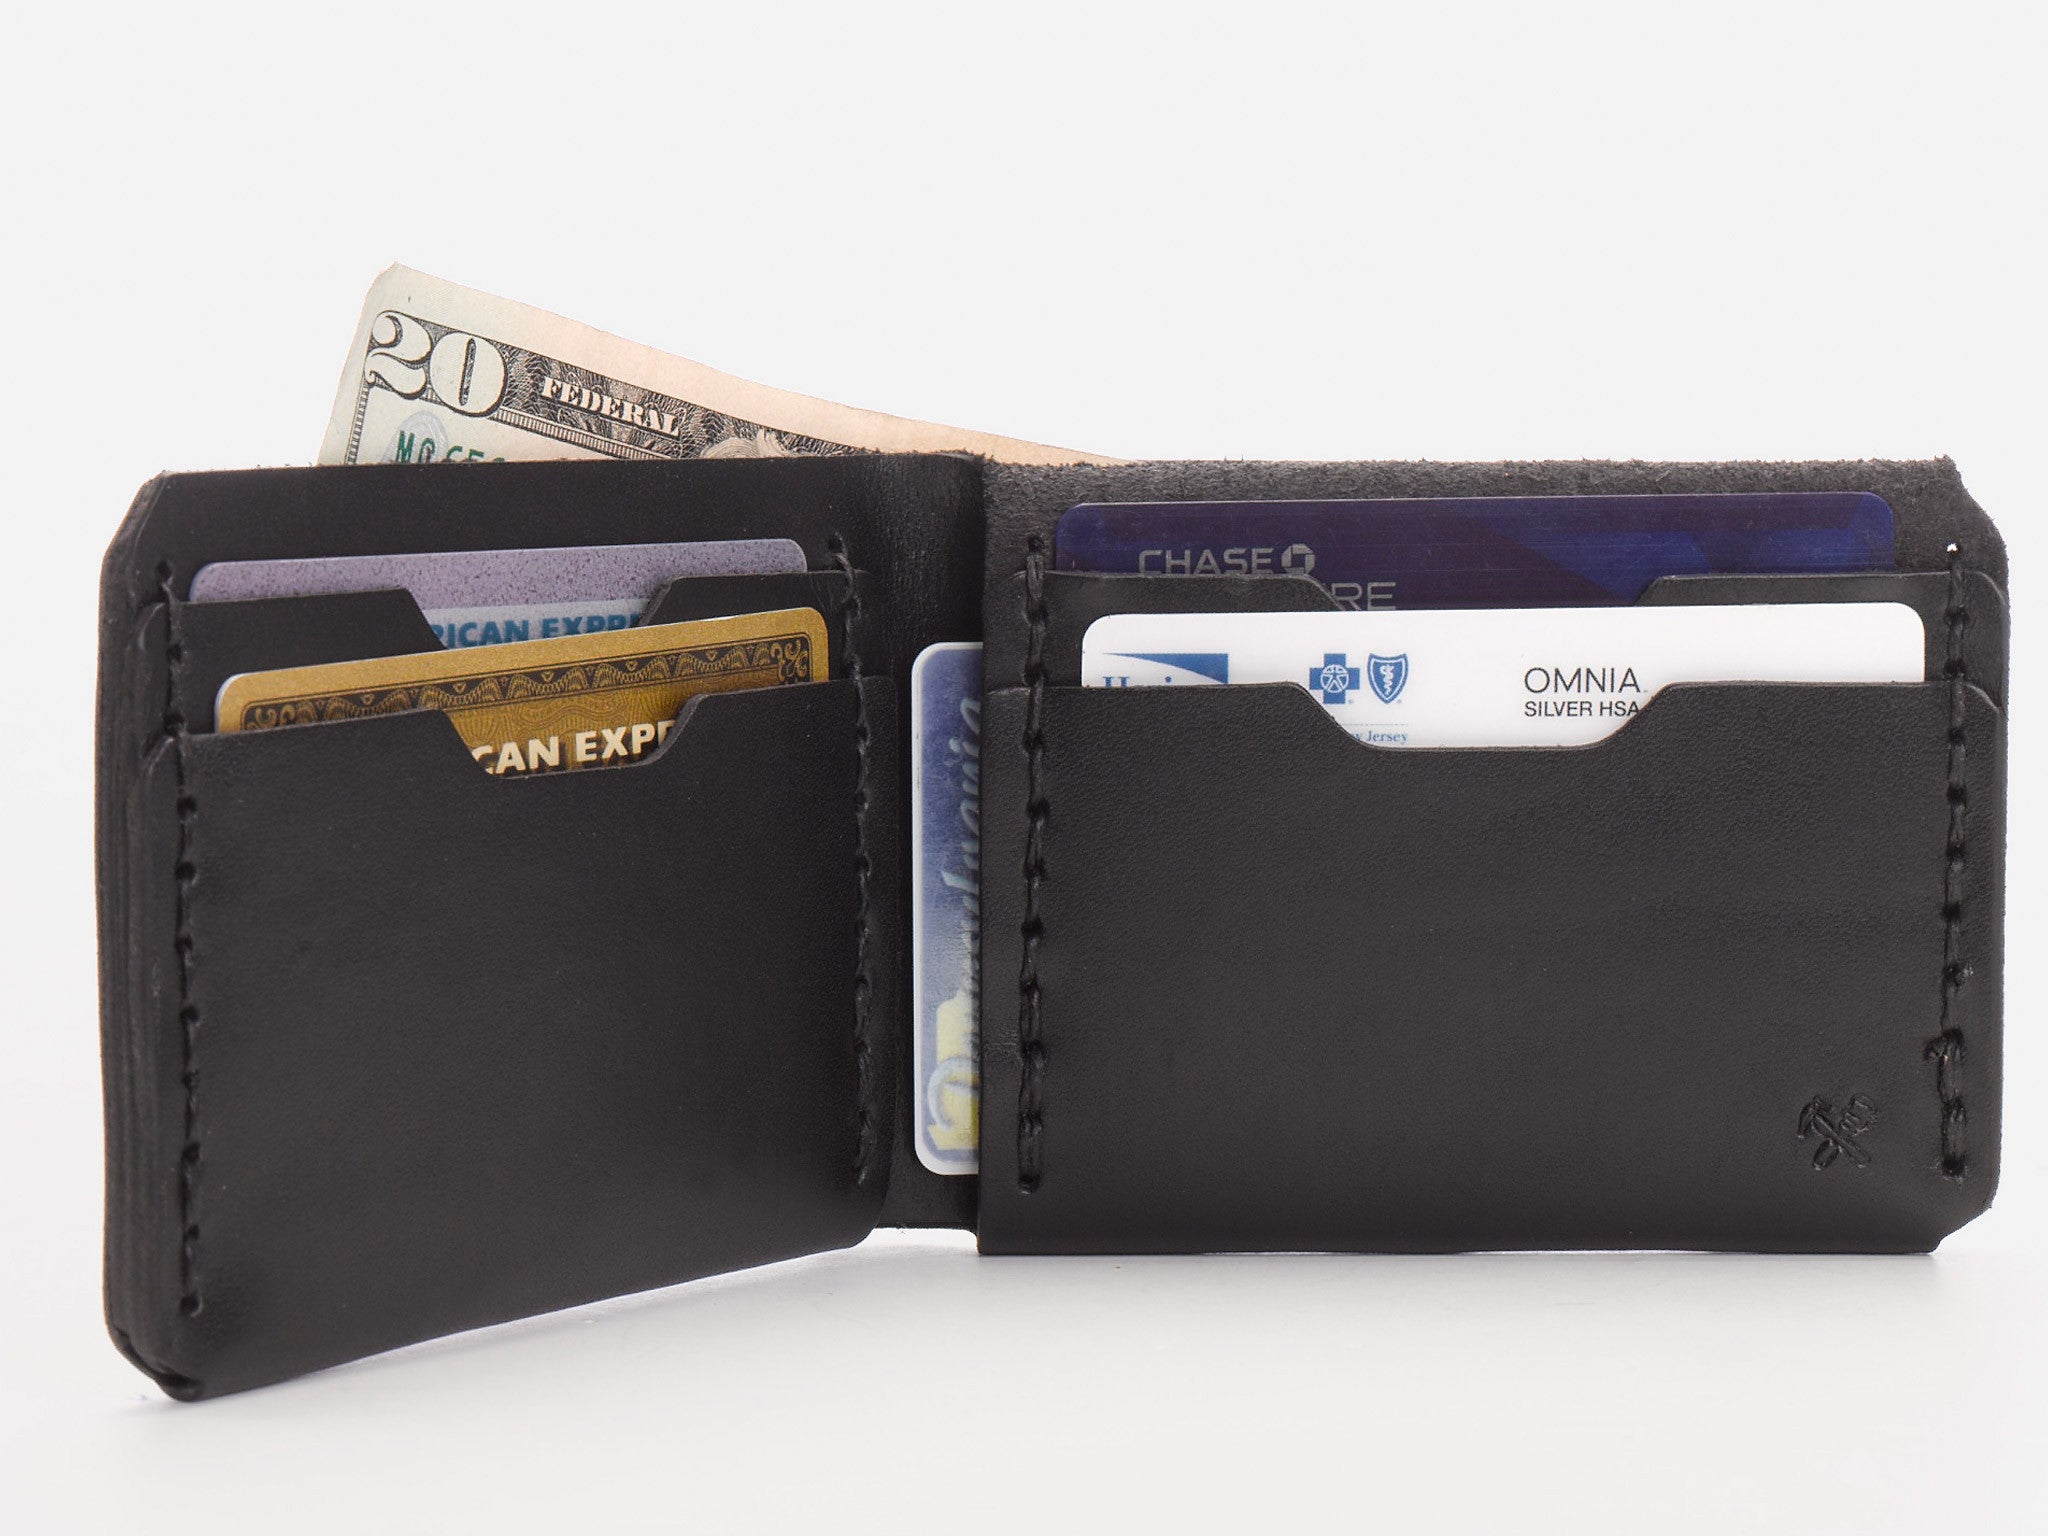 No. 398 Bi-Fold Wallet in Black Leather by Billykirk